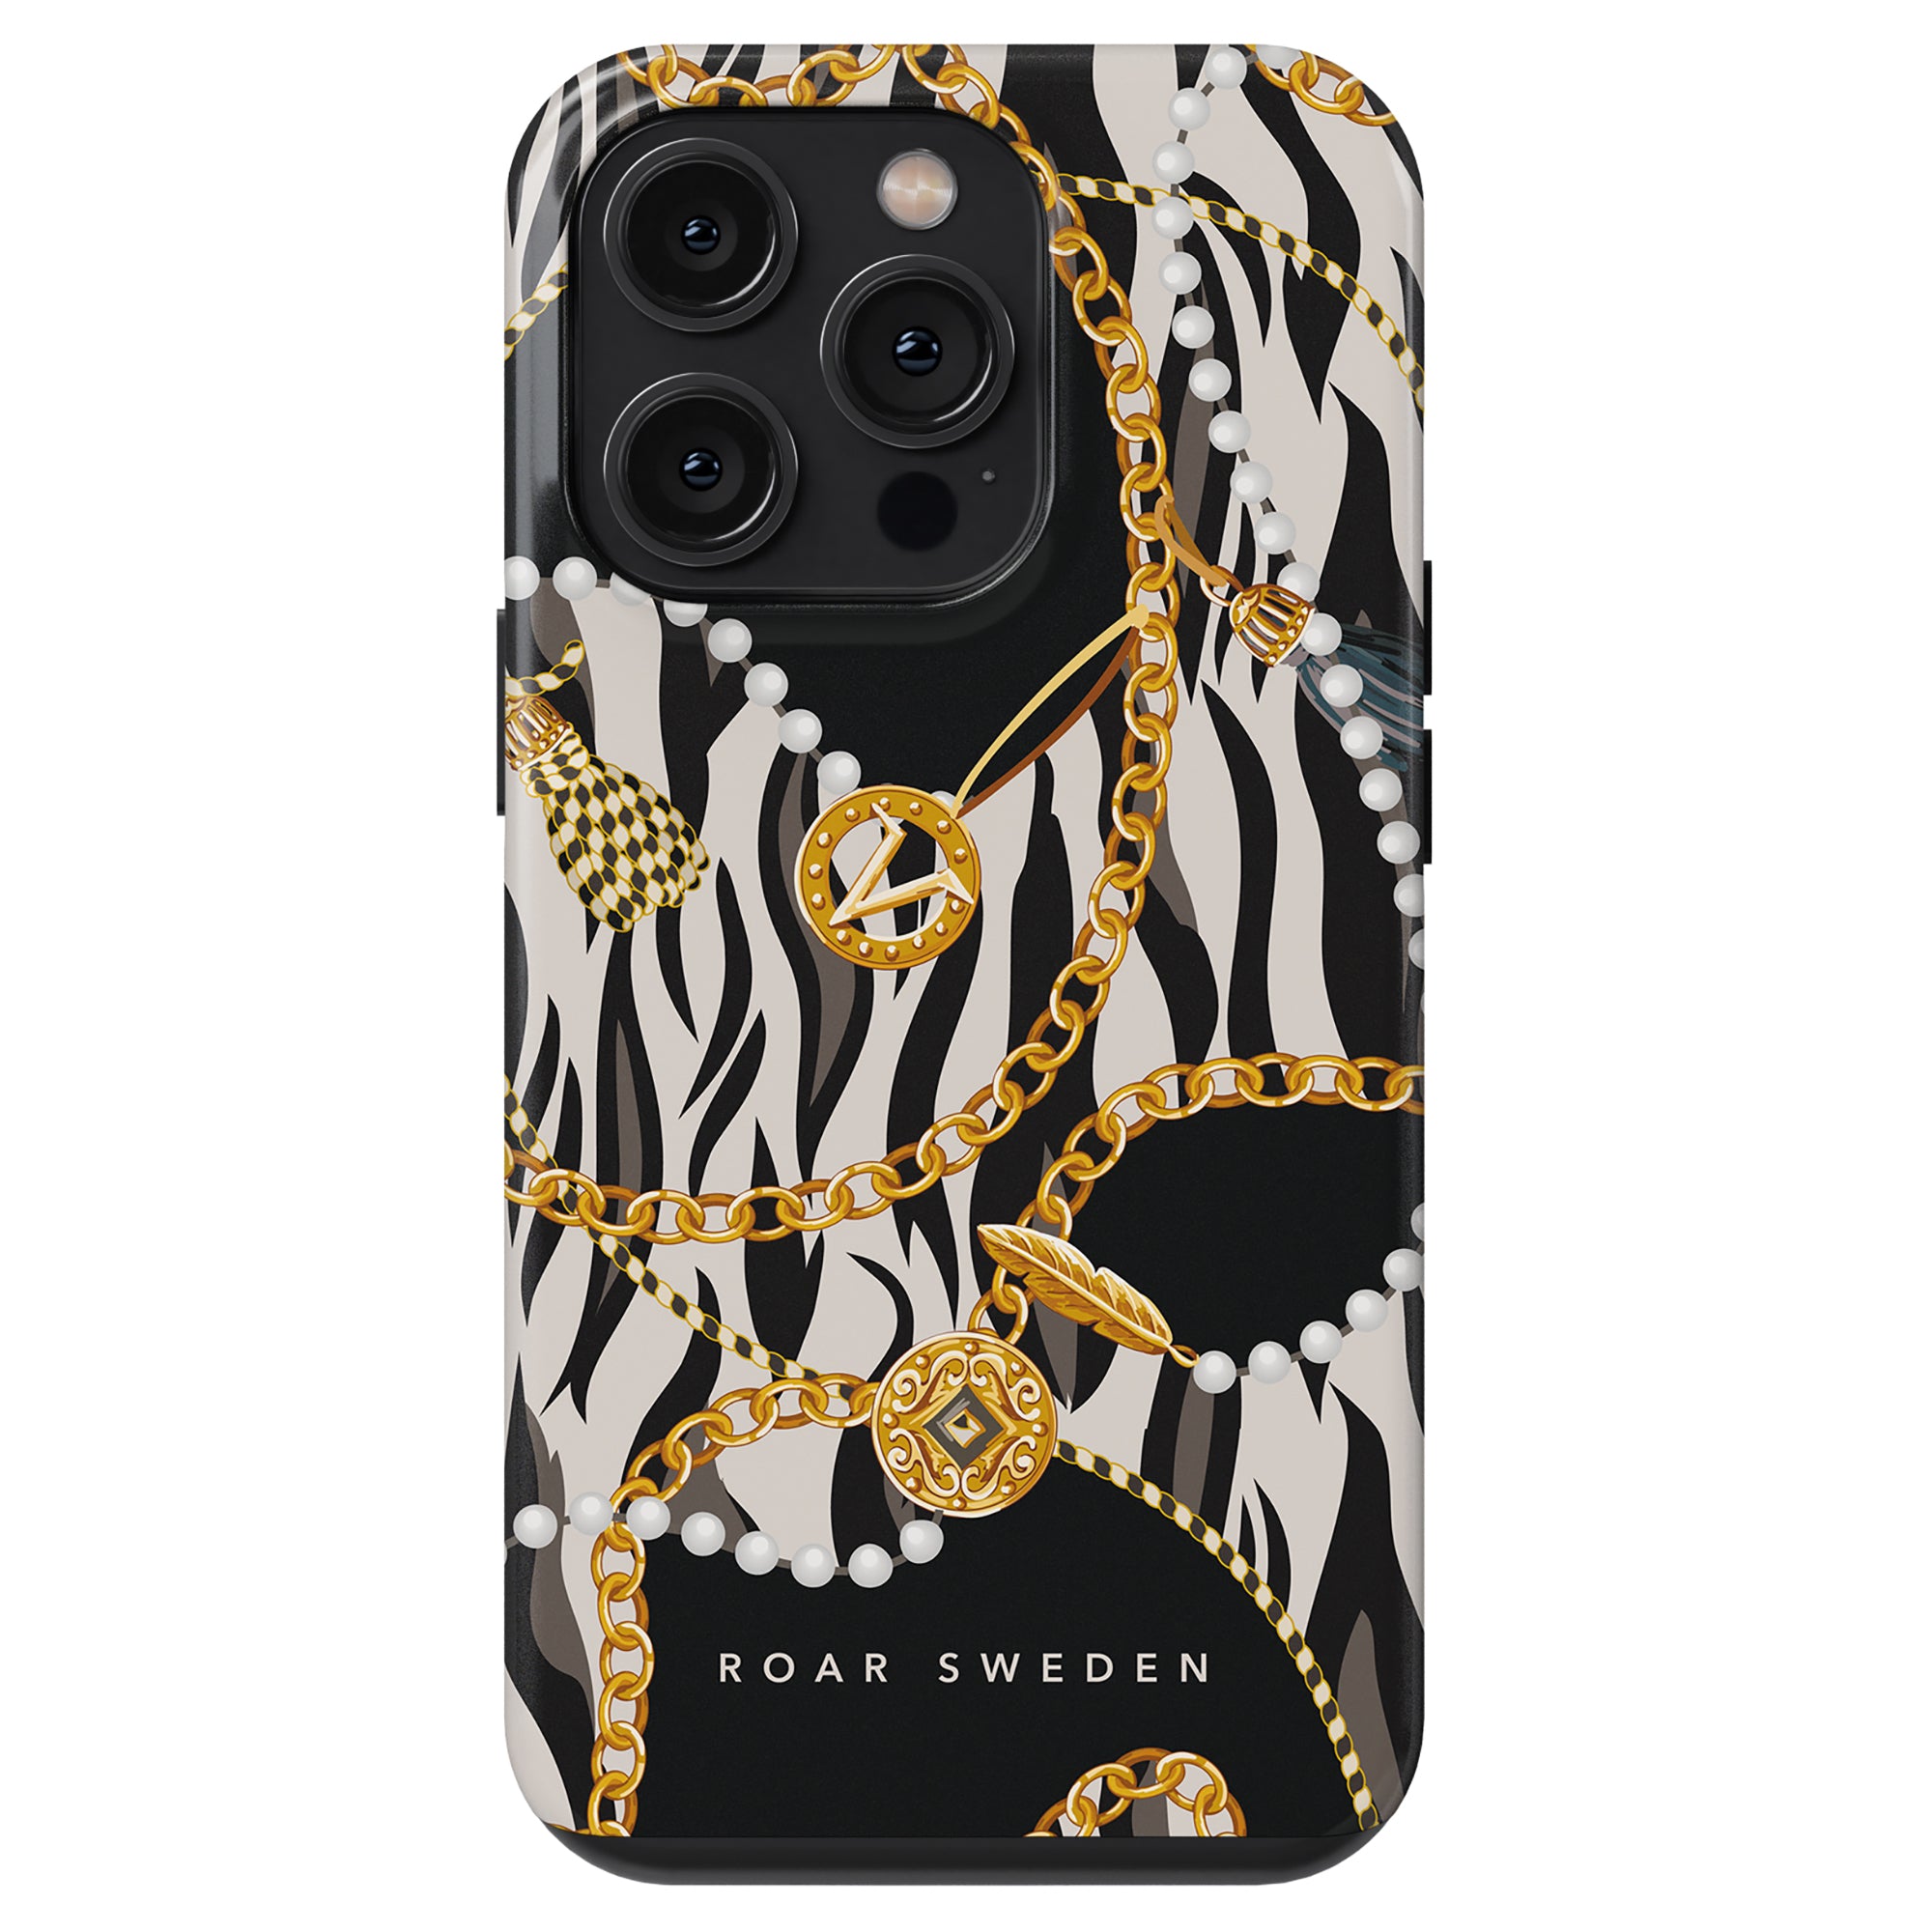 Ett lyxigt Bling - Tough Fodral med zebratryck och guldkedjor, perfekt för att lägga till en touch av vild elegans till din smartphone.